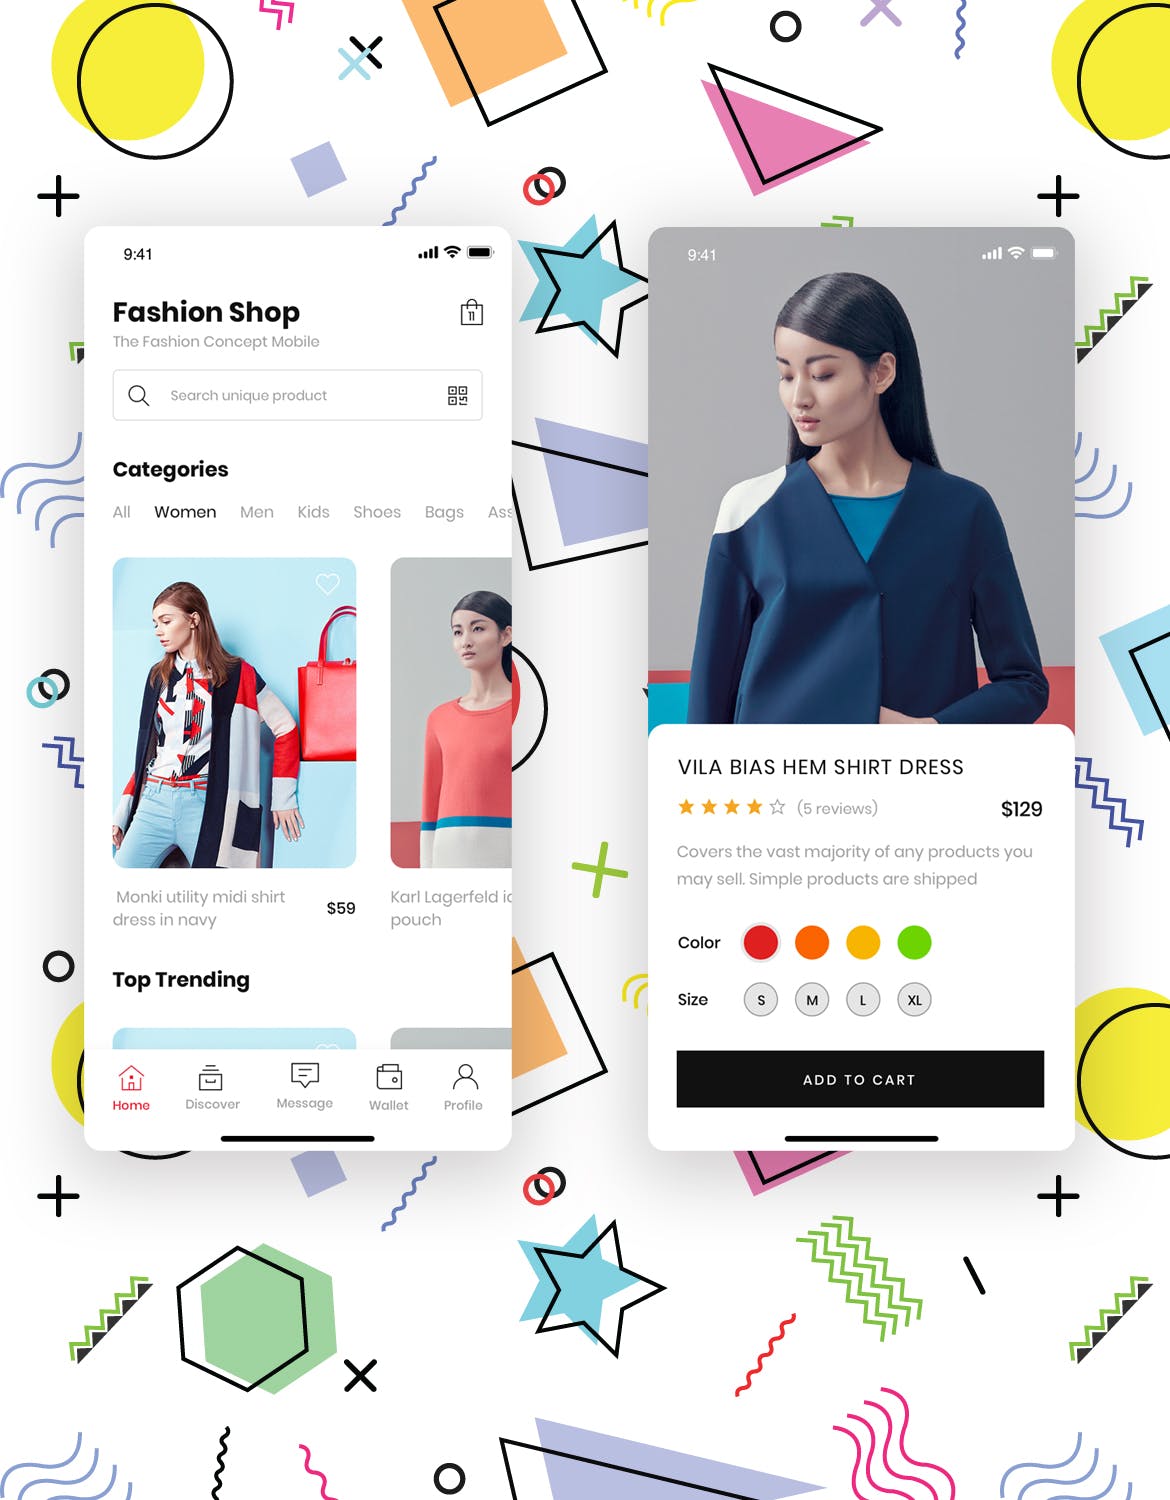 时尚服饰品牌网店APP应用UI设计素材库精选套件 Fashion Store Mobile App UI Kit插图(1)